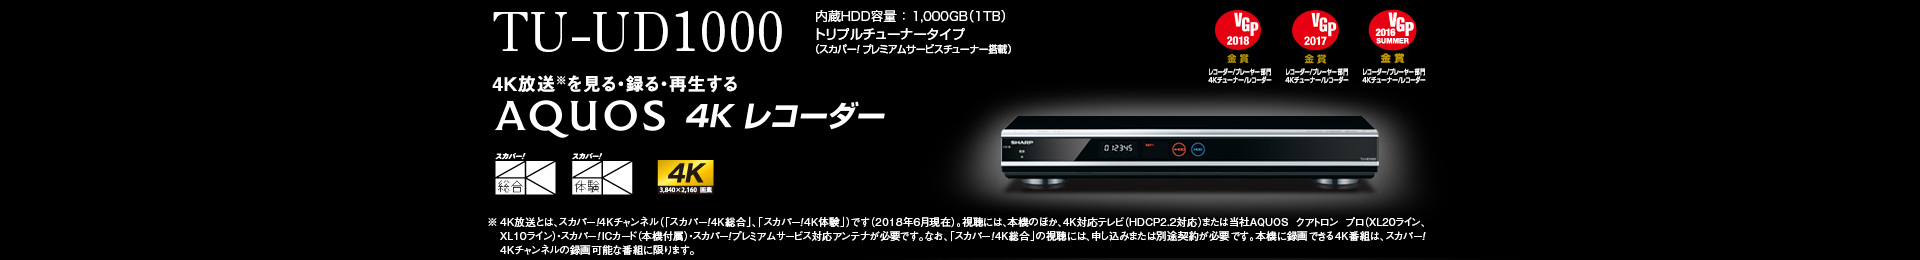 TU-UD1000 内蔵HDD容量 ： 1,000GB（1TB）トリプルチューナータイプ（スカパー!プレミアムサービスチューナー搭載）   4K放送※を見る・録る・再生する ※ 4K 放送とは、スカパー! 4K チャンネル（「スカパー! 4K 総合｣､「スカパー! 4K 体験」）です（2018年6月現在）。視聴には、本機のほか、4K 対応テレビ（HDCP2.2対応）または当社AQUOSクアトロン プロ（XL20ライン、XL10ライン）・スカパー!IC カード（本機付属）・スカパー! プレミアムサービス対応アンテナが必要です。なお、「スカパー! 4K 総合｣のサービス視聴には、申し込みまたは別途契約が必要です。本機に録画できる4K 番組は、スカパー! 4K チャンネルの録画可能な番組に限ります。